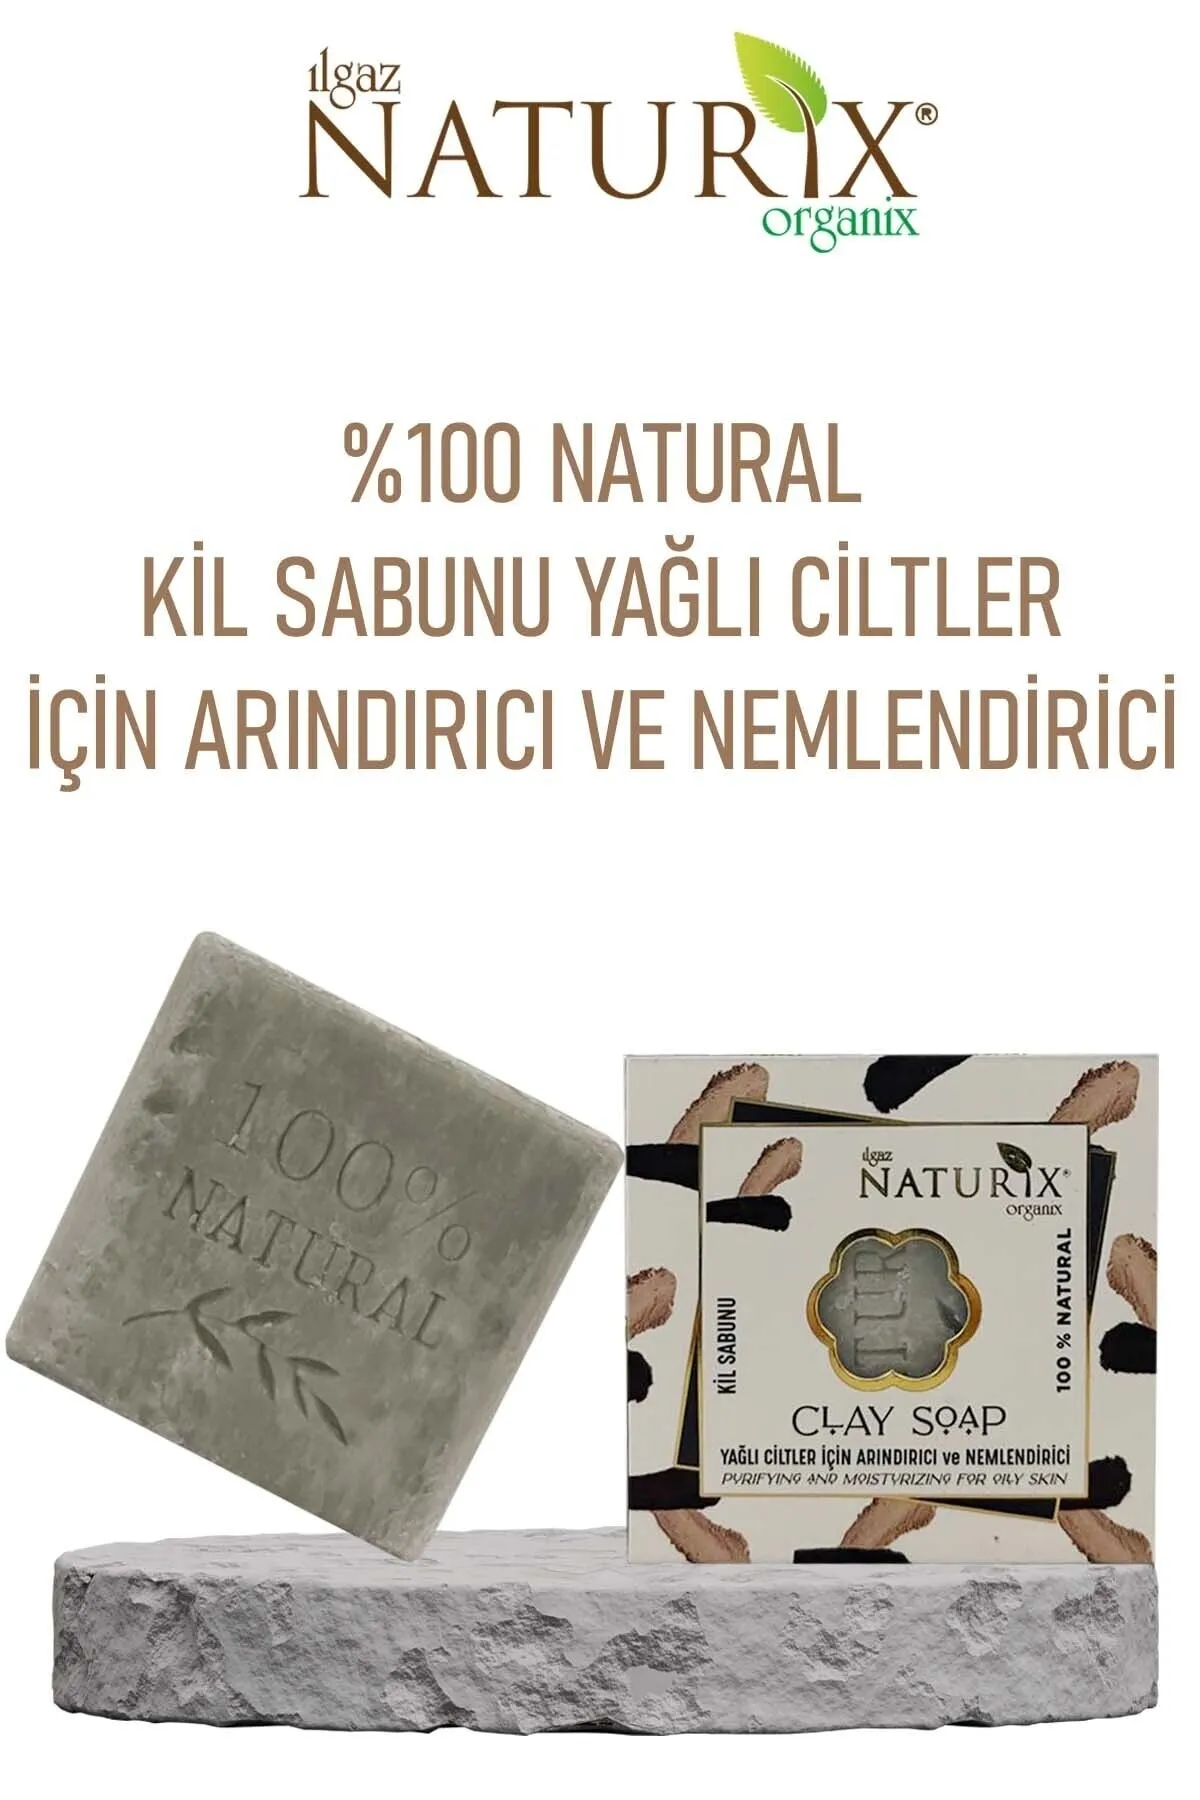 Naturix Yağlı Ciltler İçin Arındrıcı Nemlendirici Kil Sabunu 125 g - 2